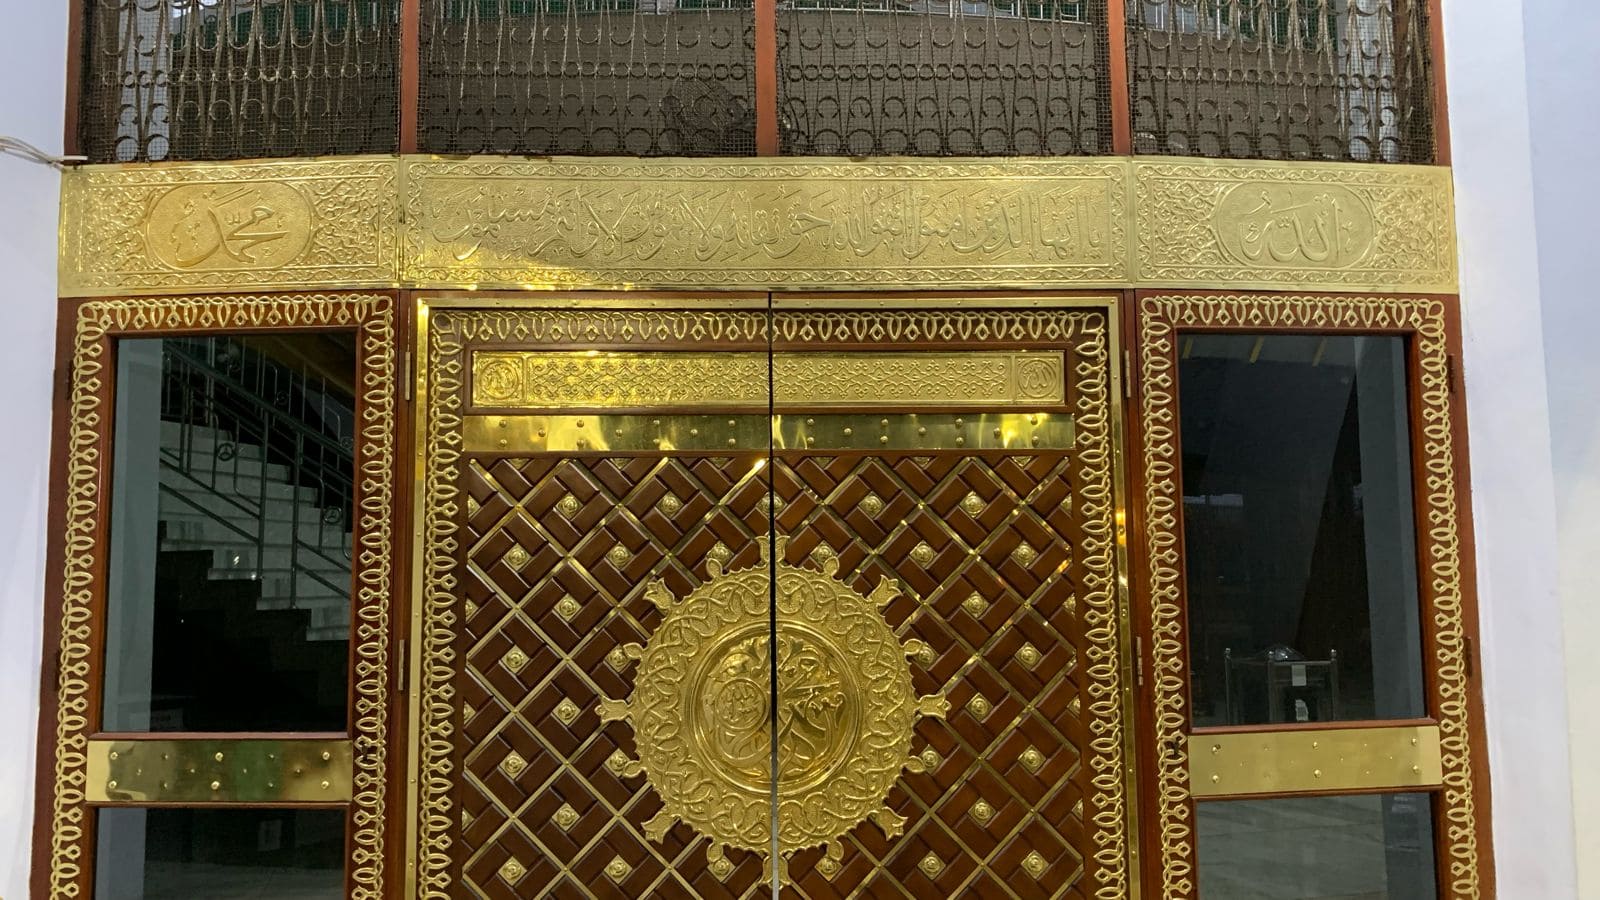 Wisata religi Masjid Jami’ Al Baitul Amien.